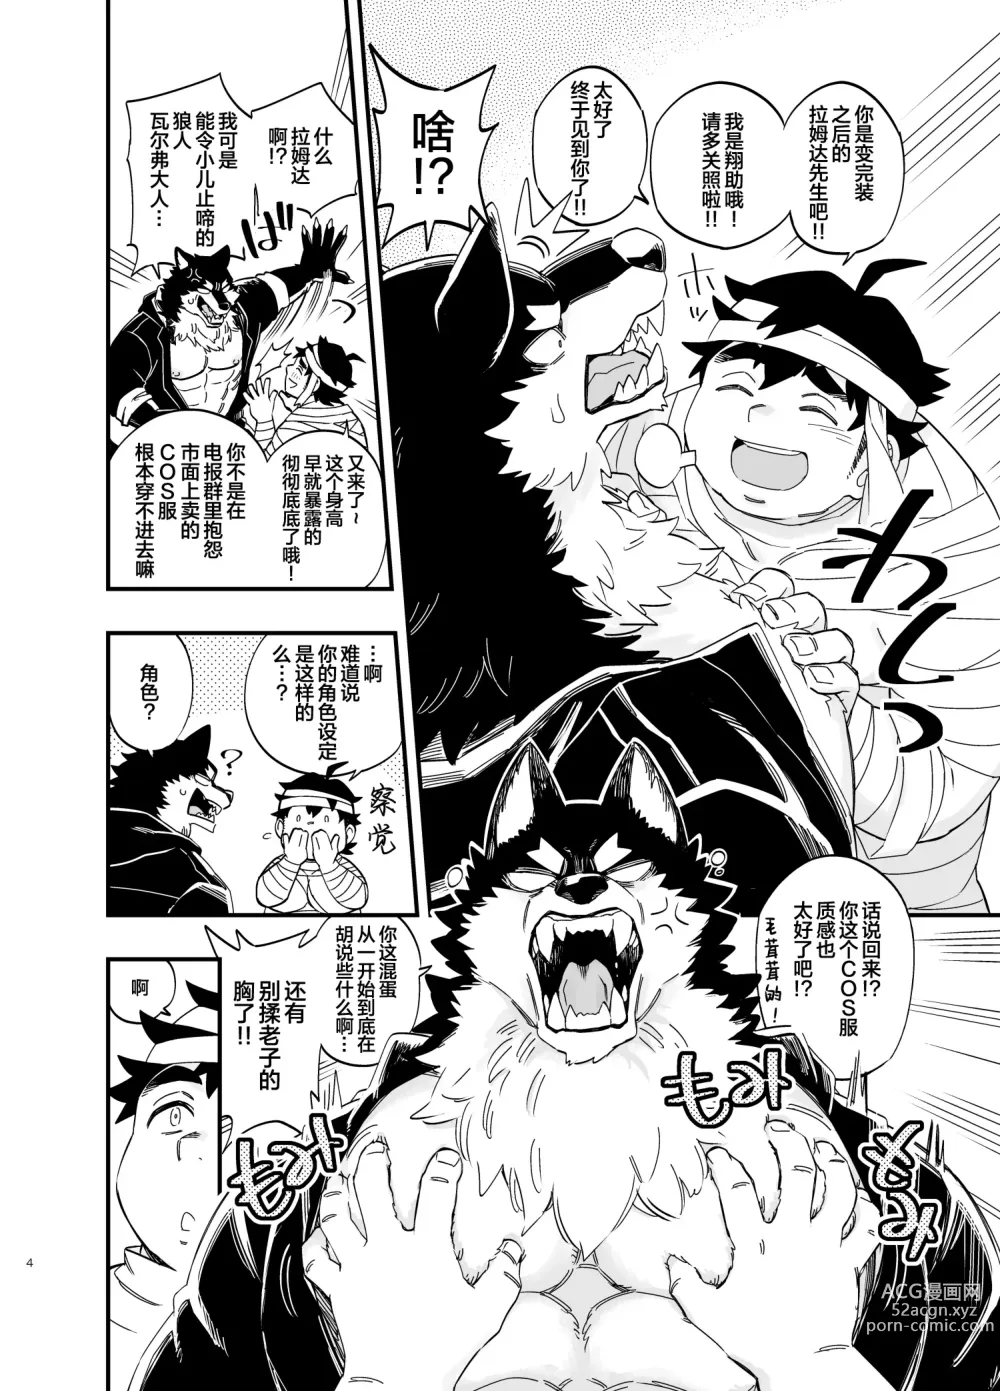 Page 5 of manga オオカミなんかこわくない！